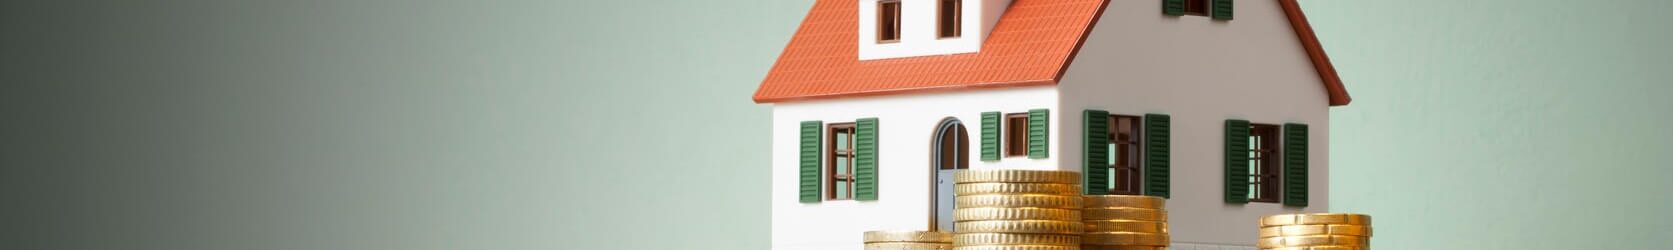 casa con crecientes impuestos a la propiedad impagos